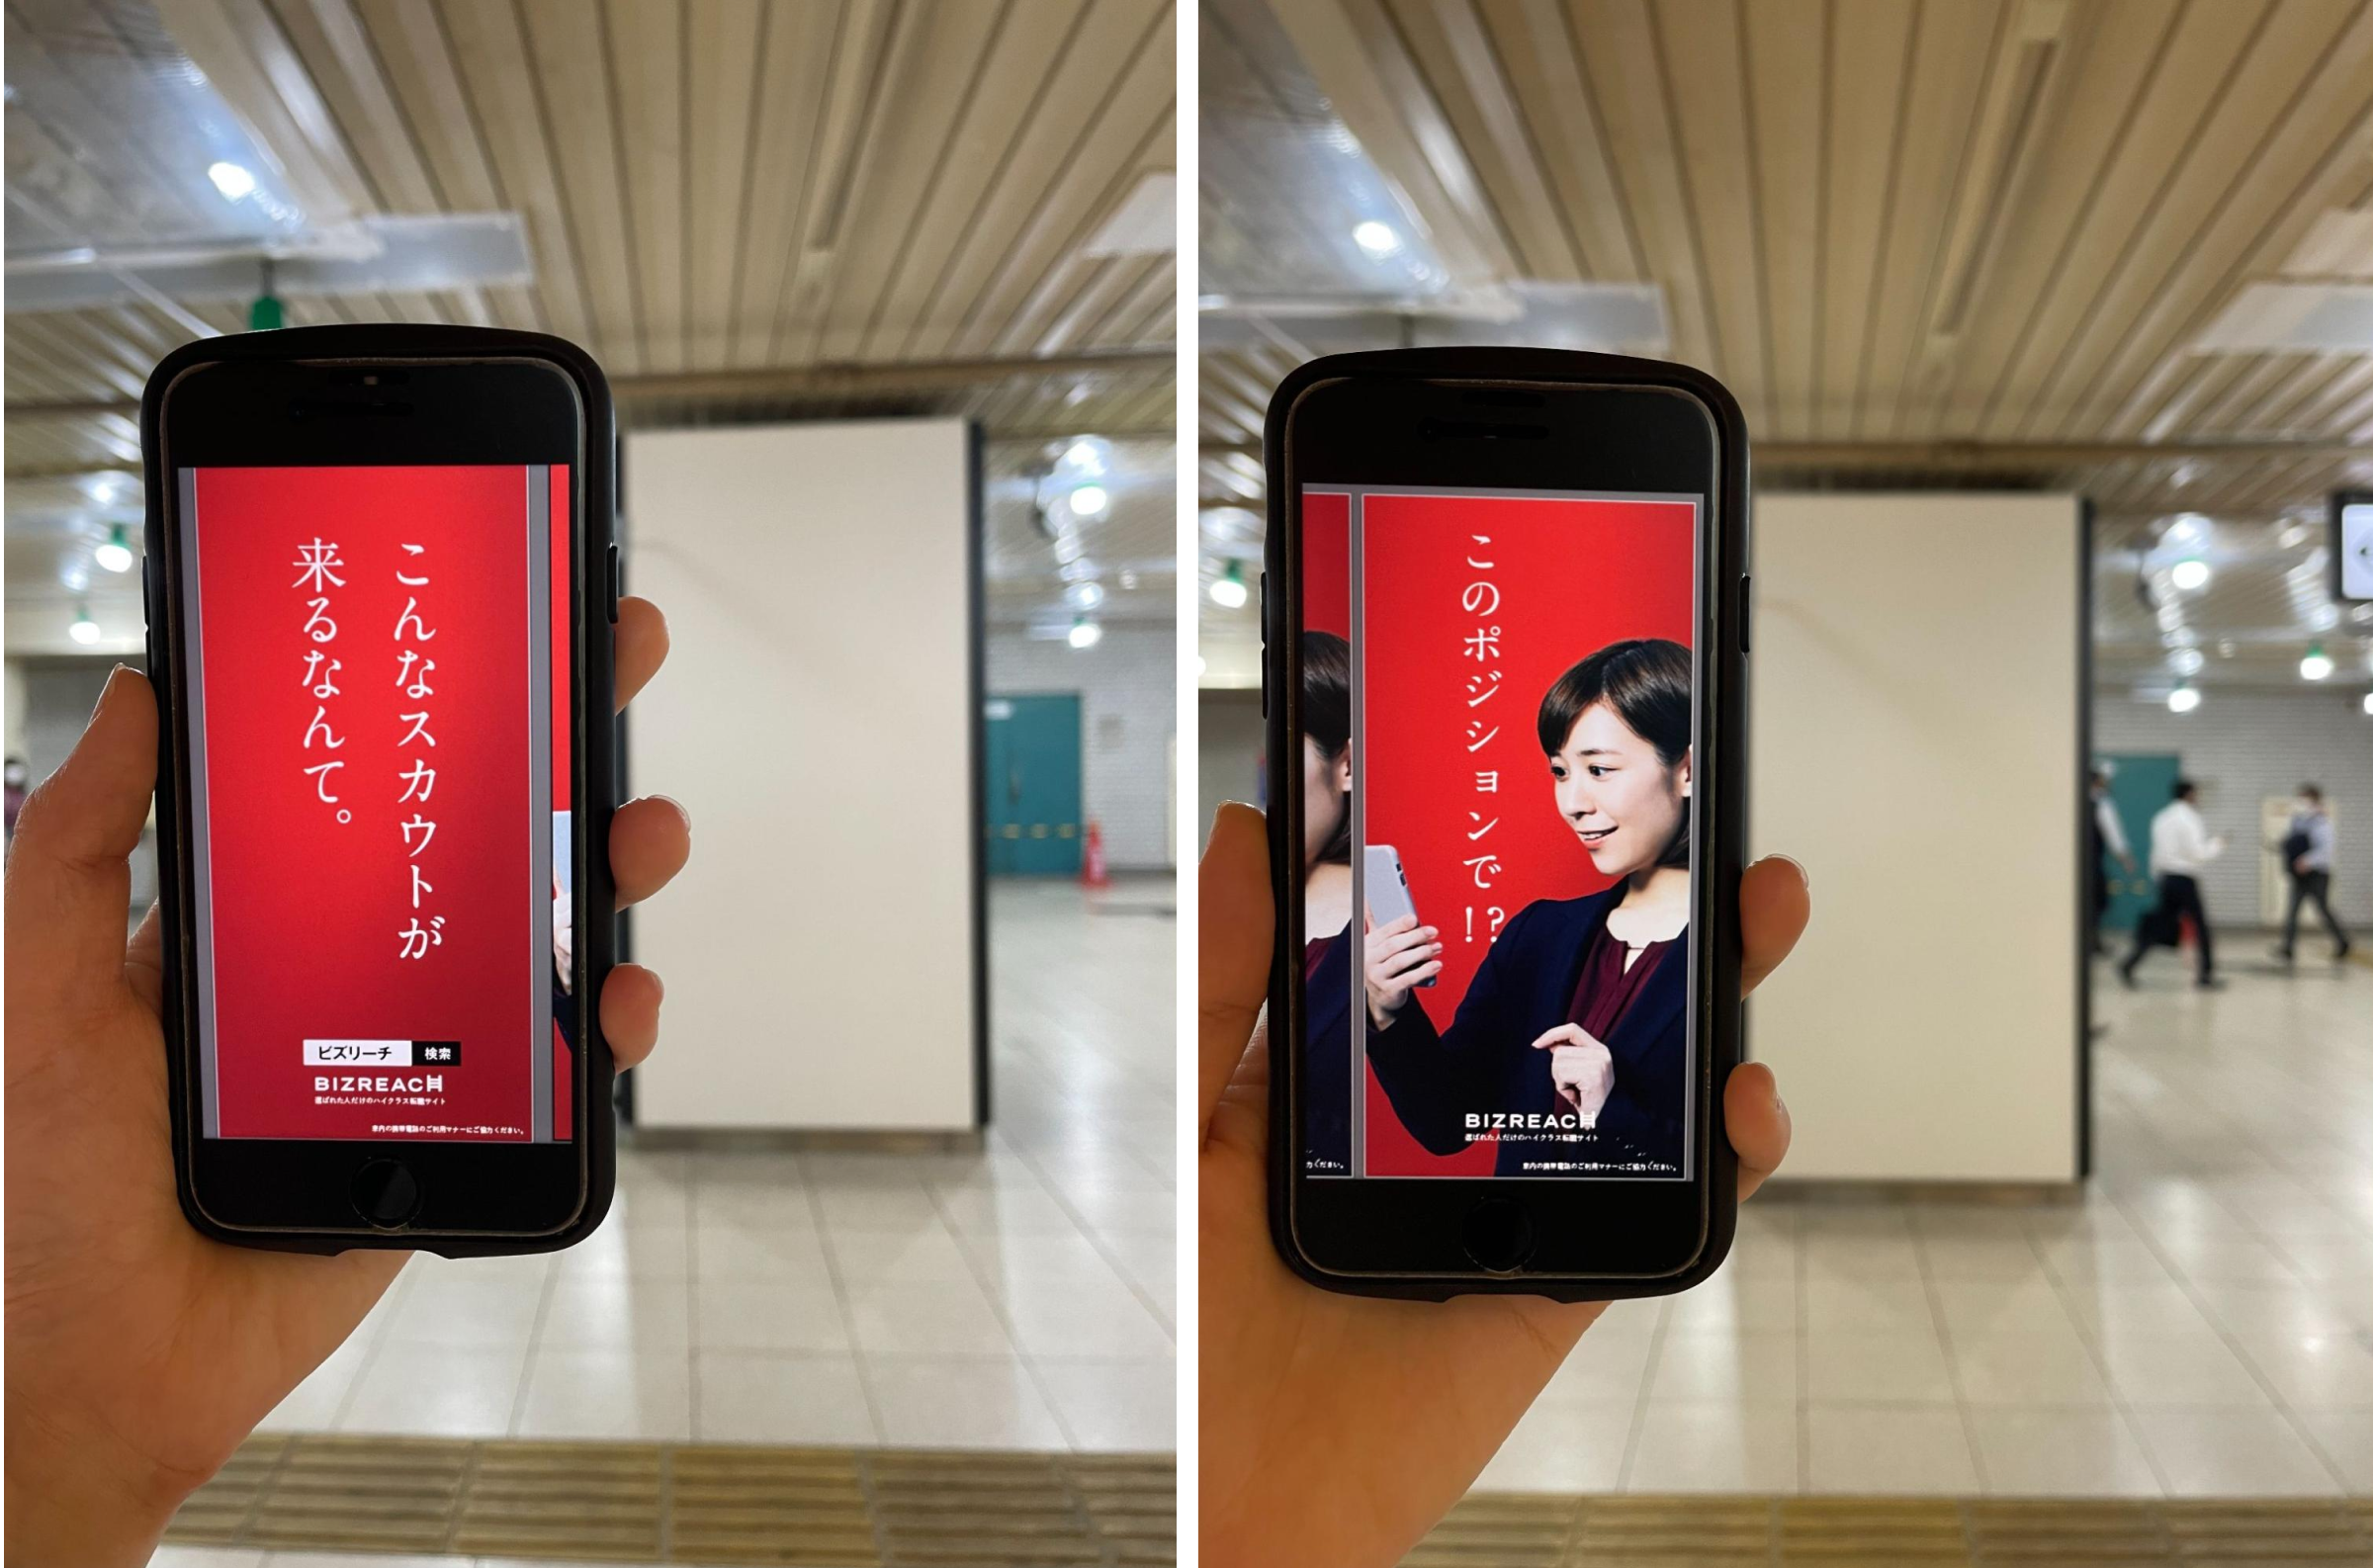 掲載する柱と、スマートフォンに表示させたクリエイティブを並べて、見え方をイメージしている様子の写真。